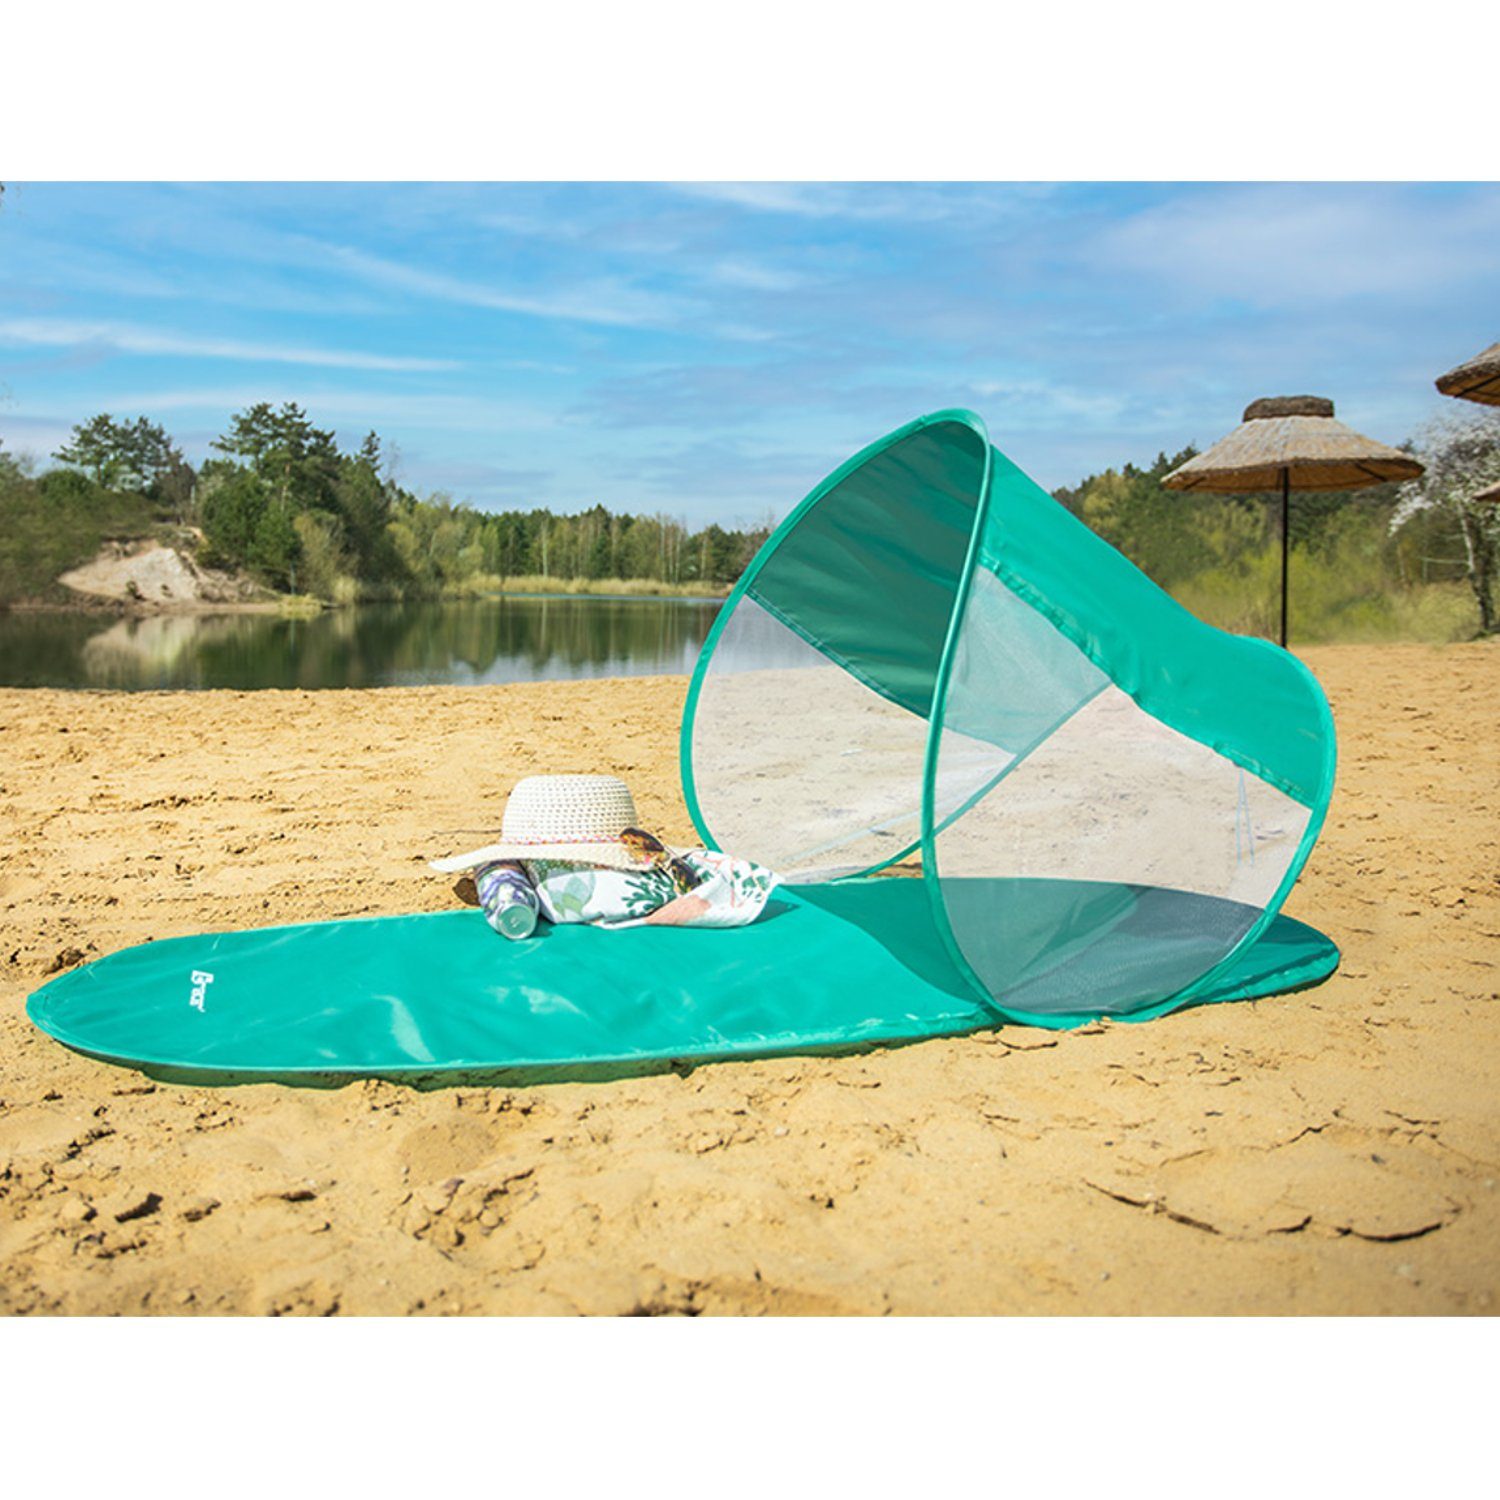 1, neigbarem Tracer 145x70cm mit Strandmuschel, Personen: Sonnenschutzdach; Mint Strandmatte